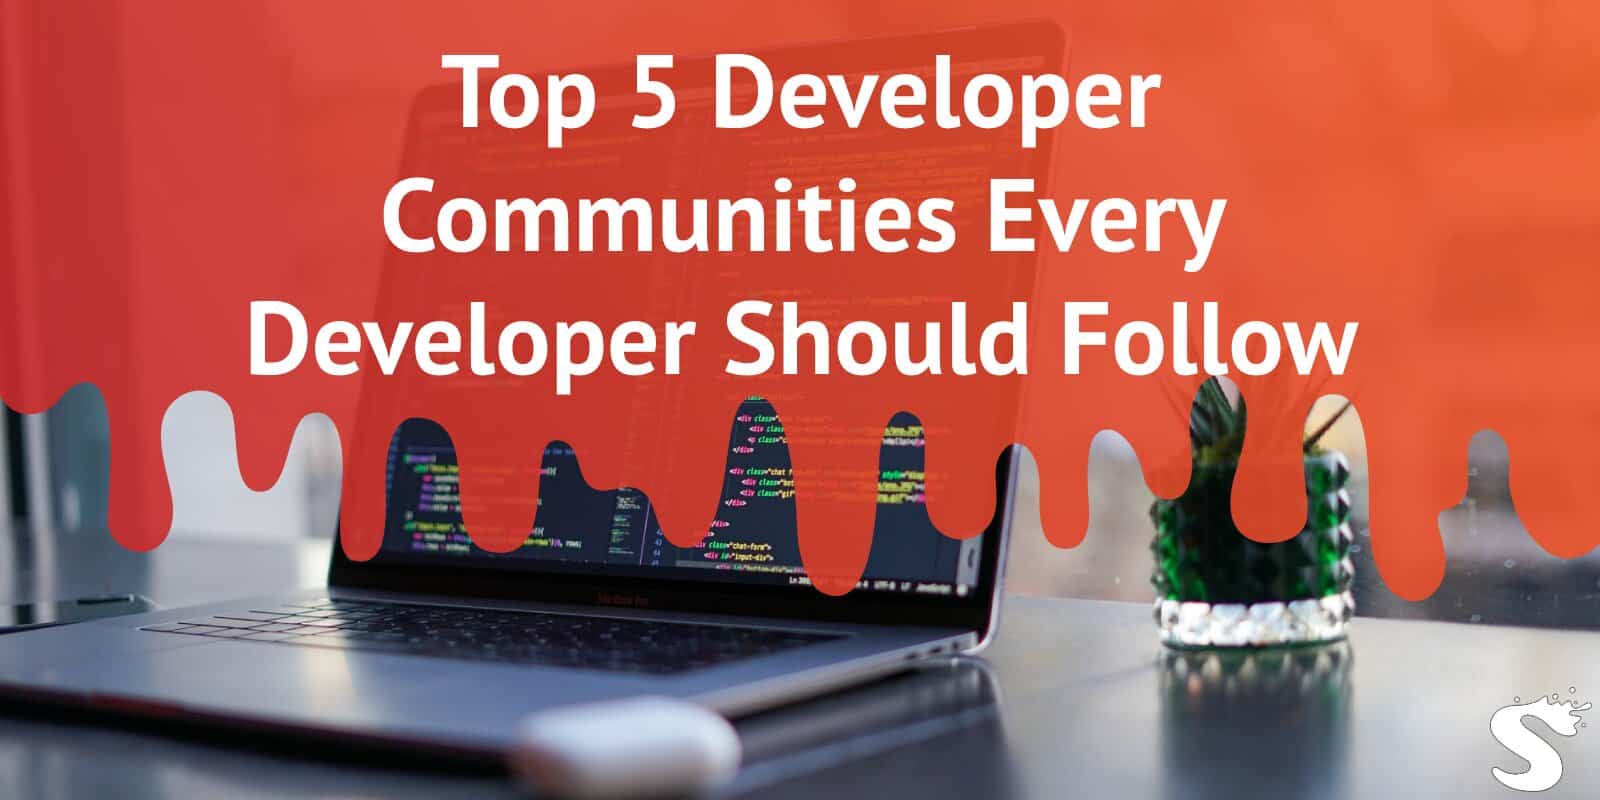 Top 5 Developer Communities Every Developer Should Follow